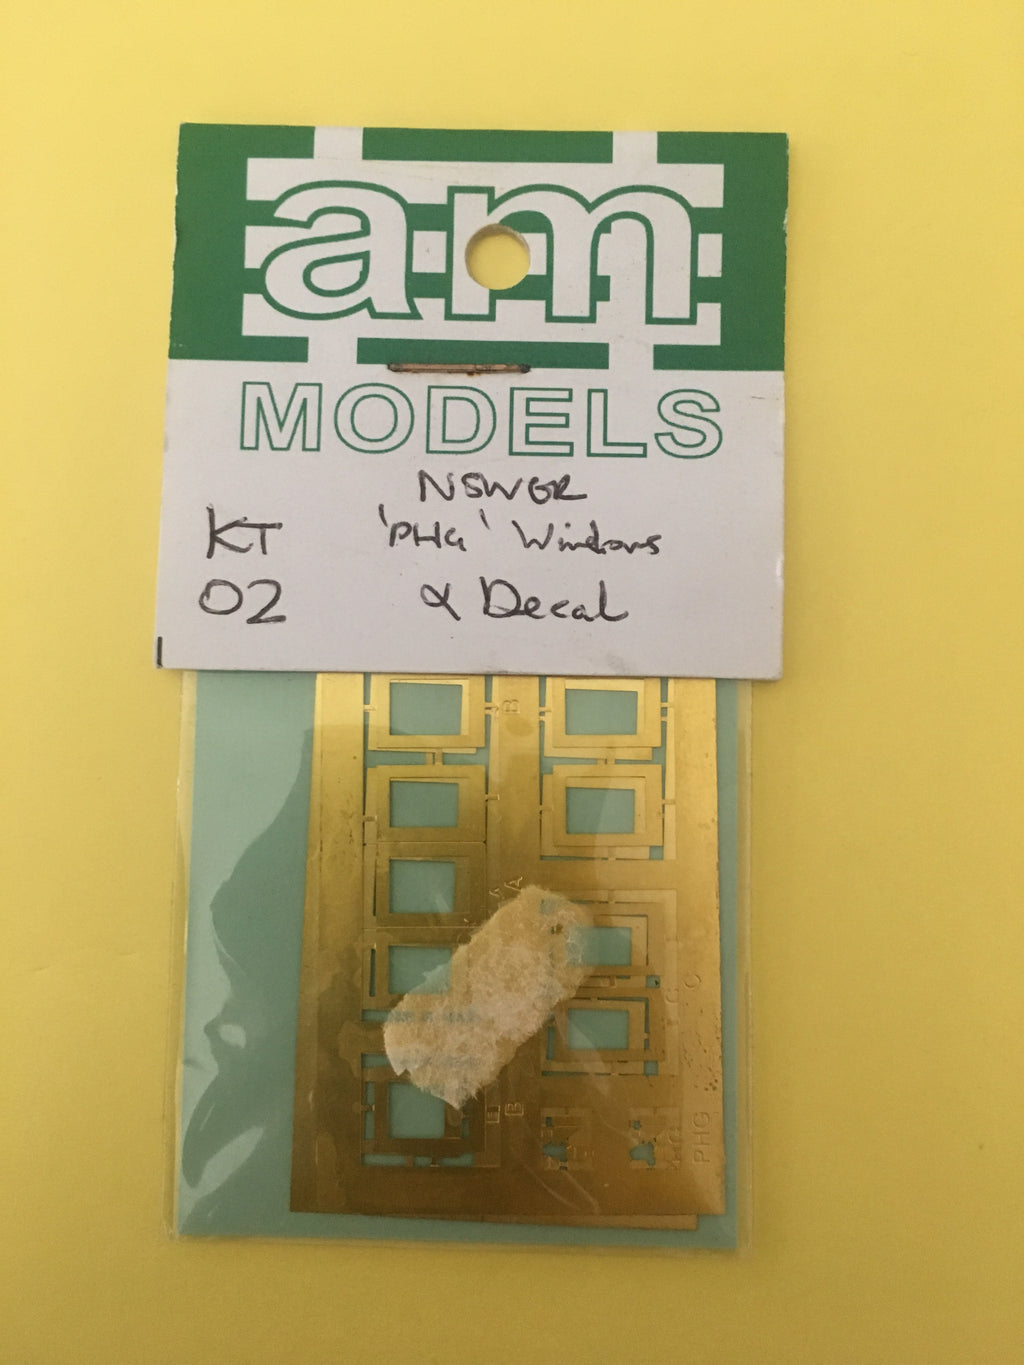 AM Models : KT 02 NSWGR ‘PHG’ Etch Brass Windows & Decal